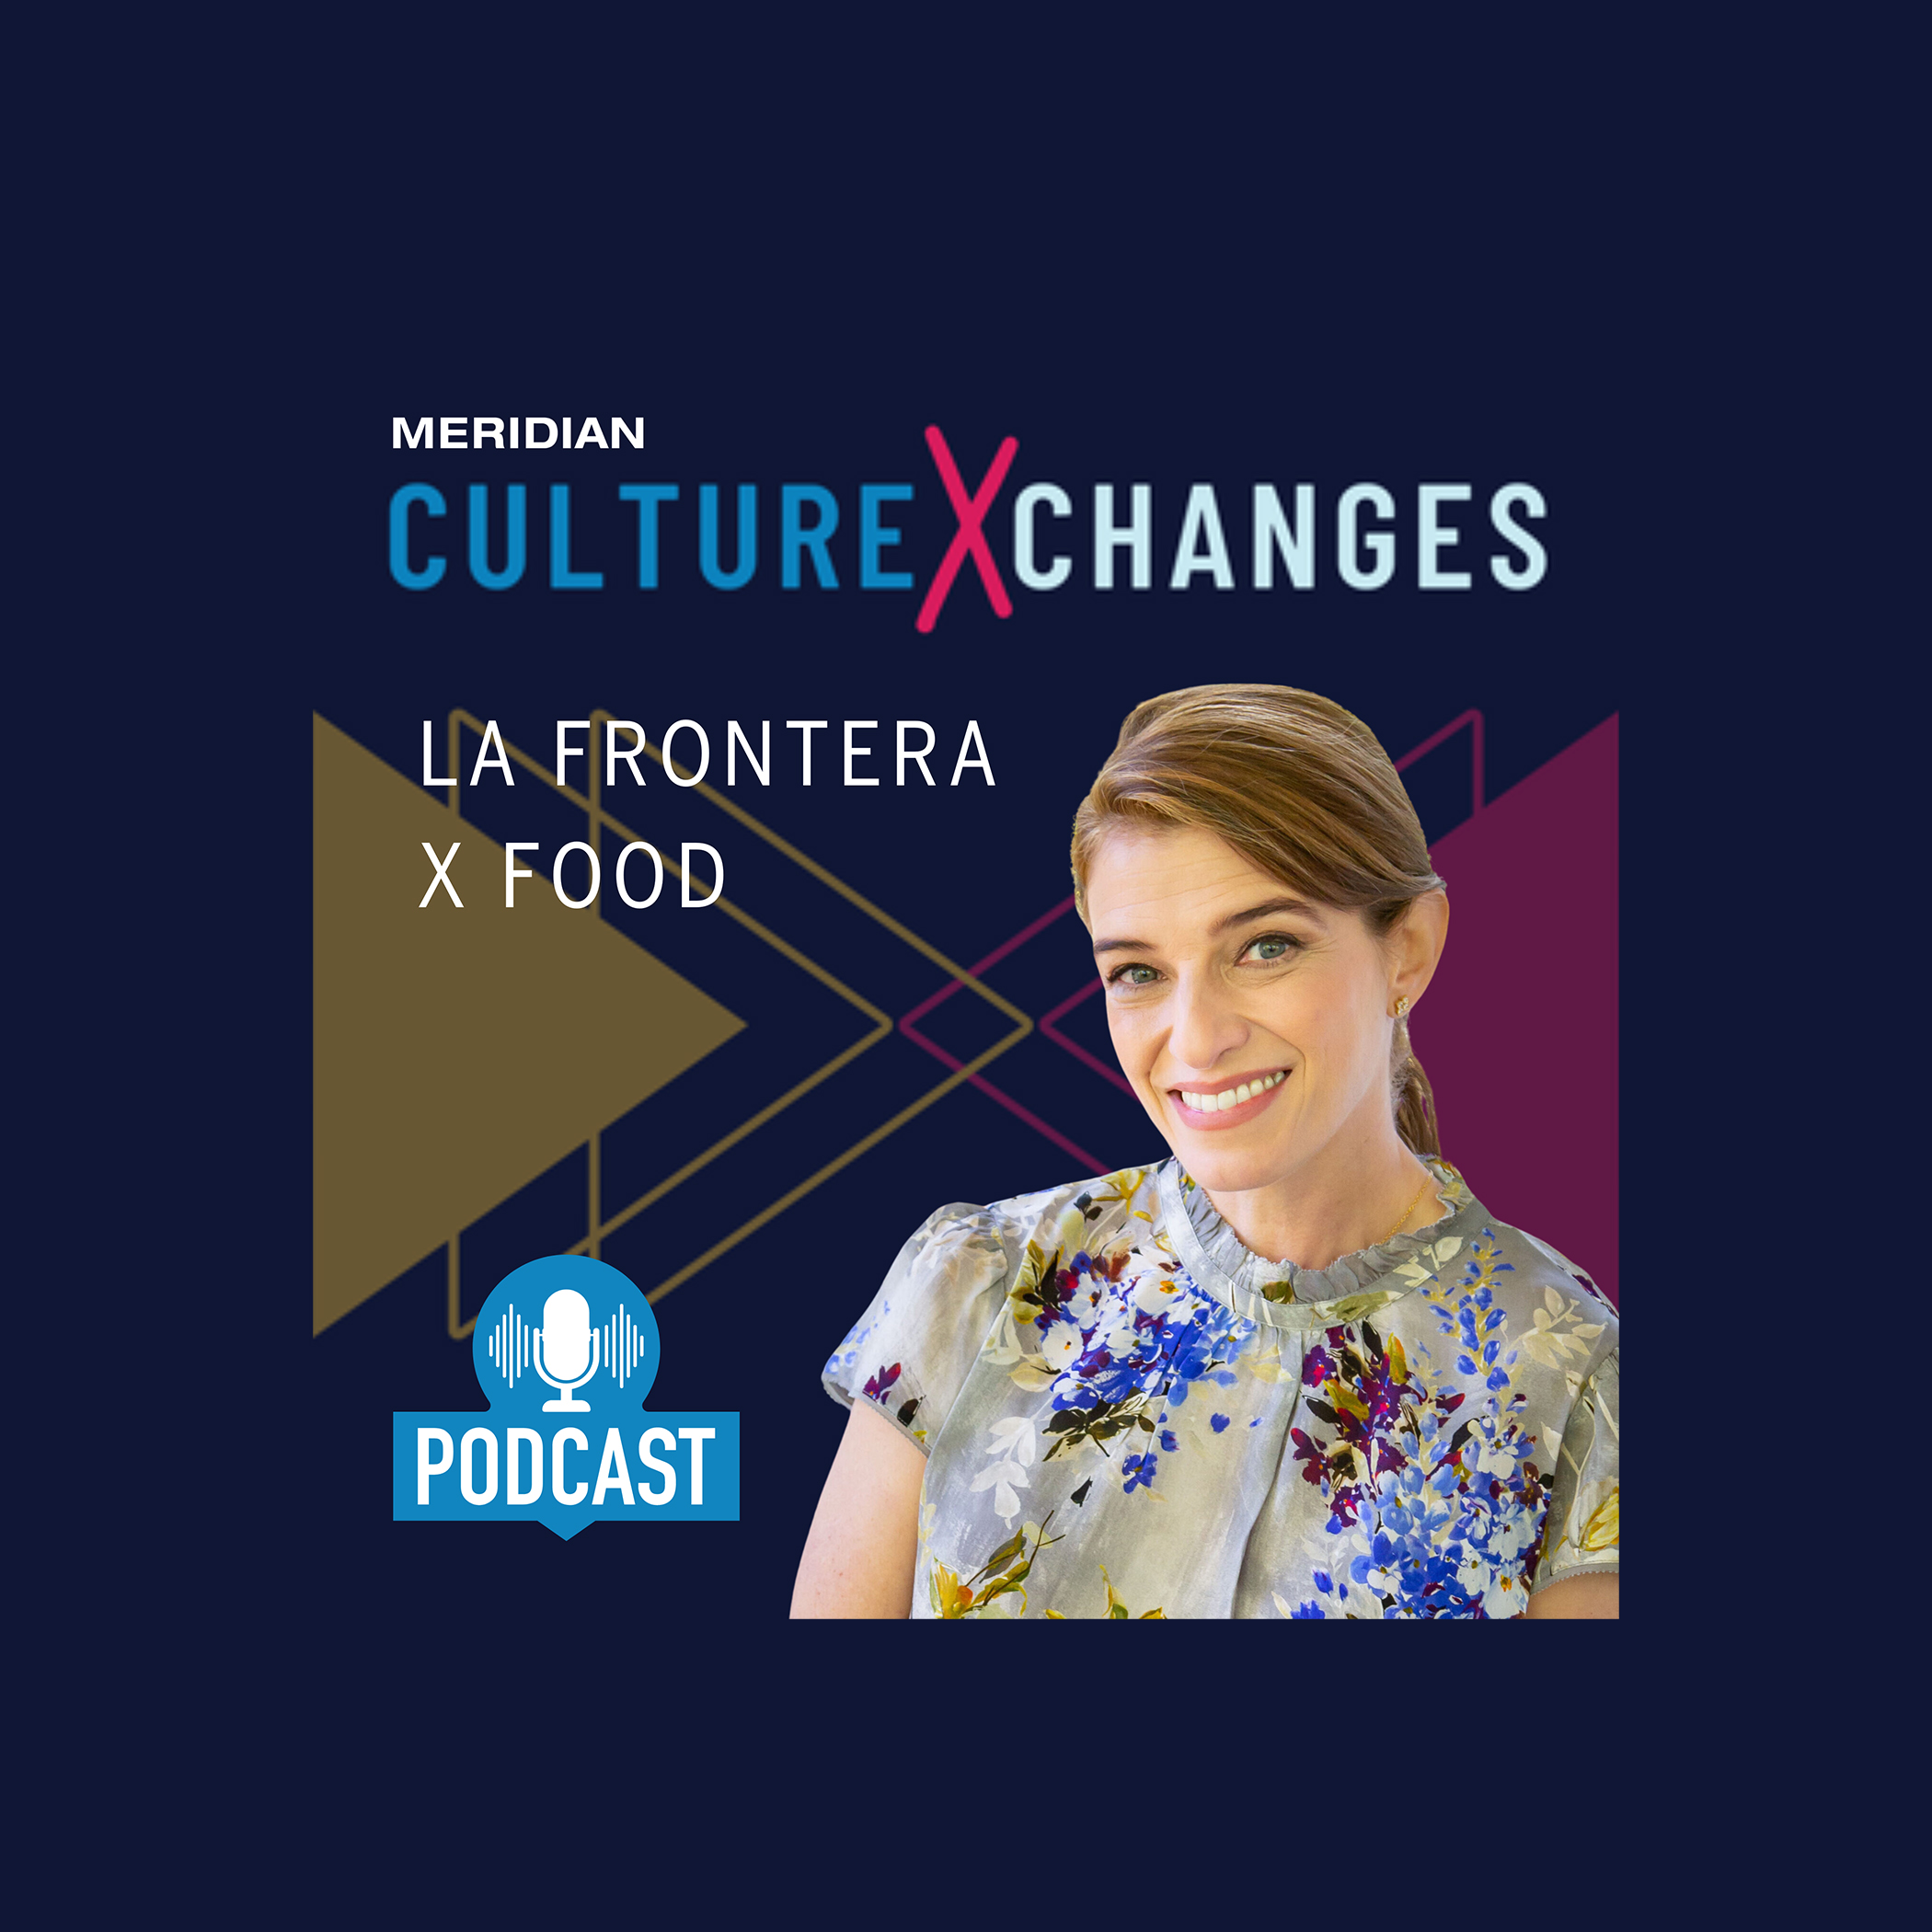 cultureXchanges Podcast: Pati Jinich – La Frontera x Food